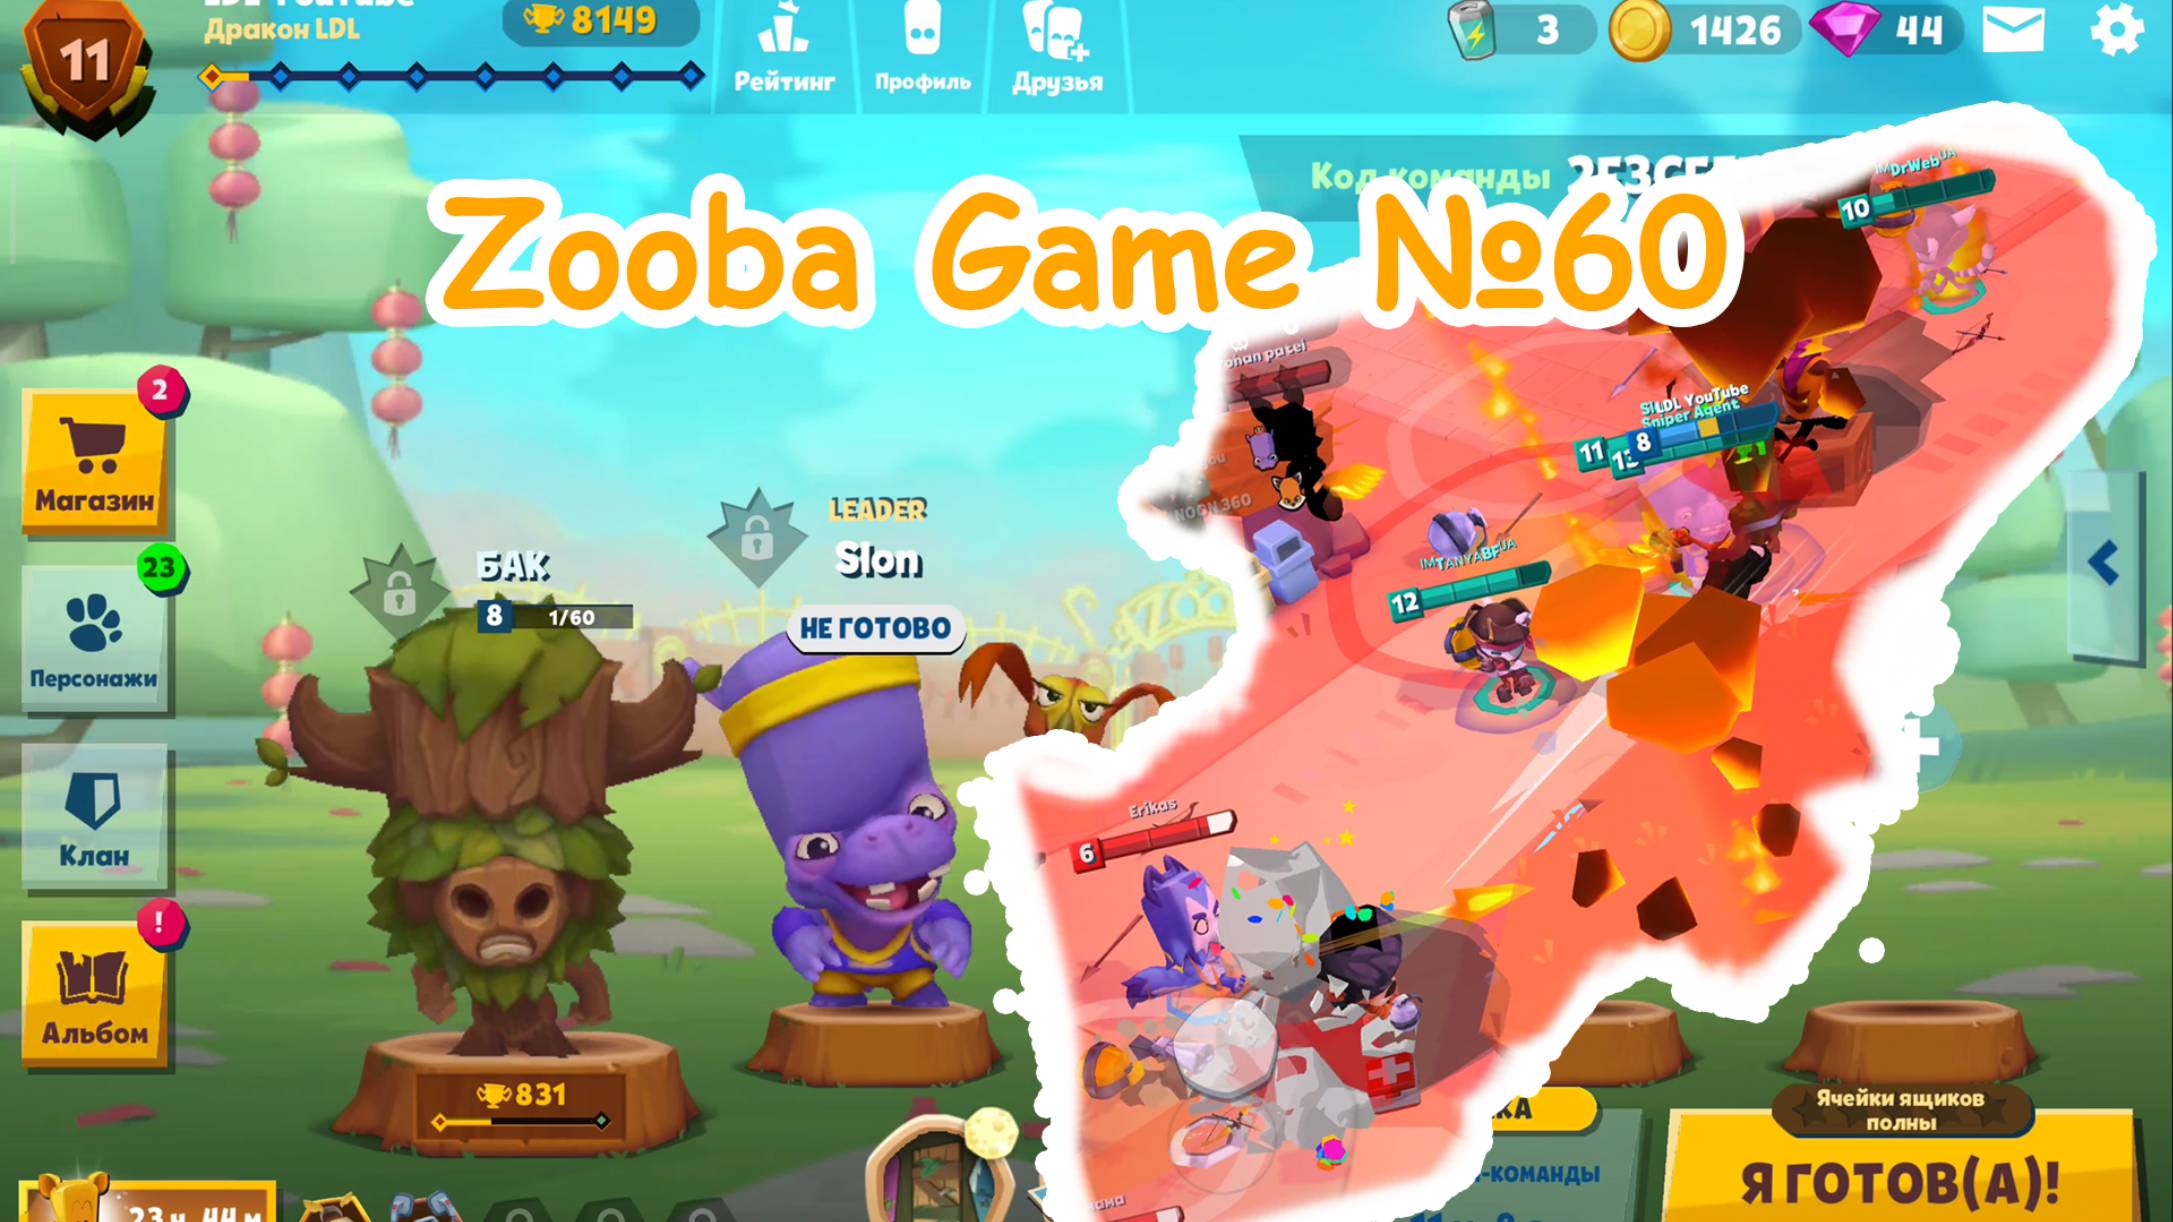 Zooba Game #60 #zooba